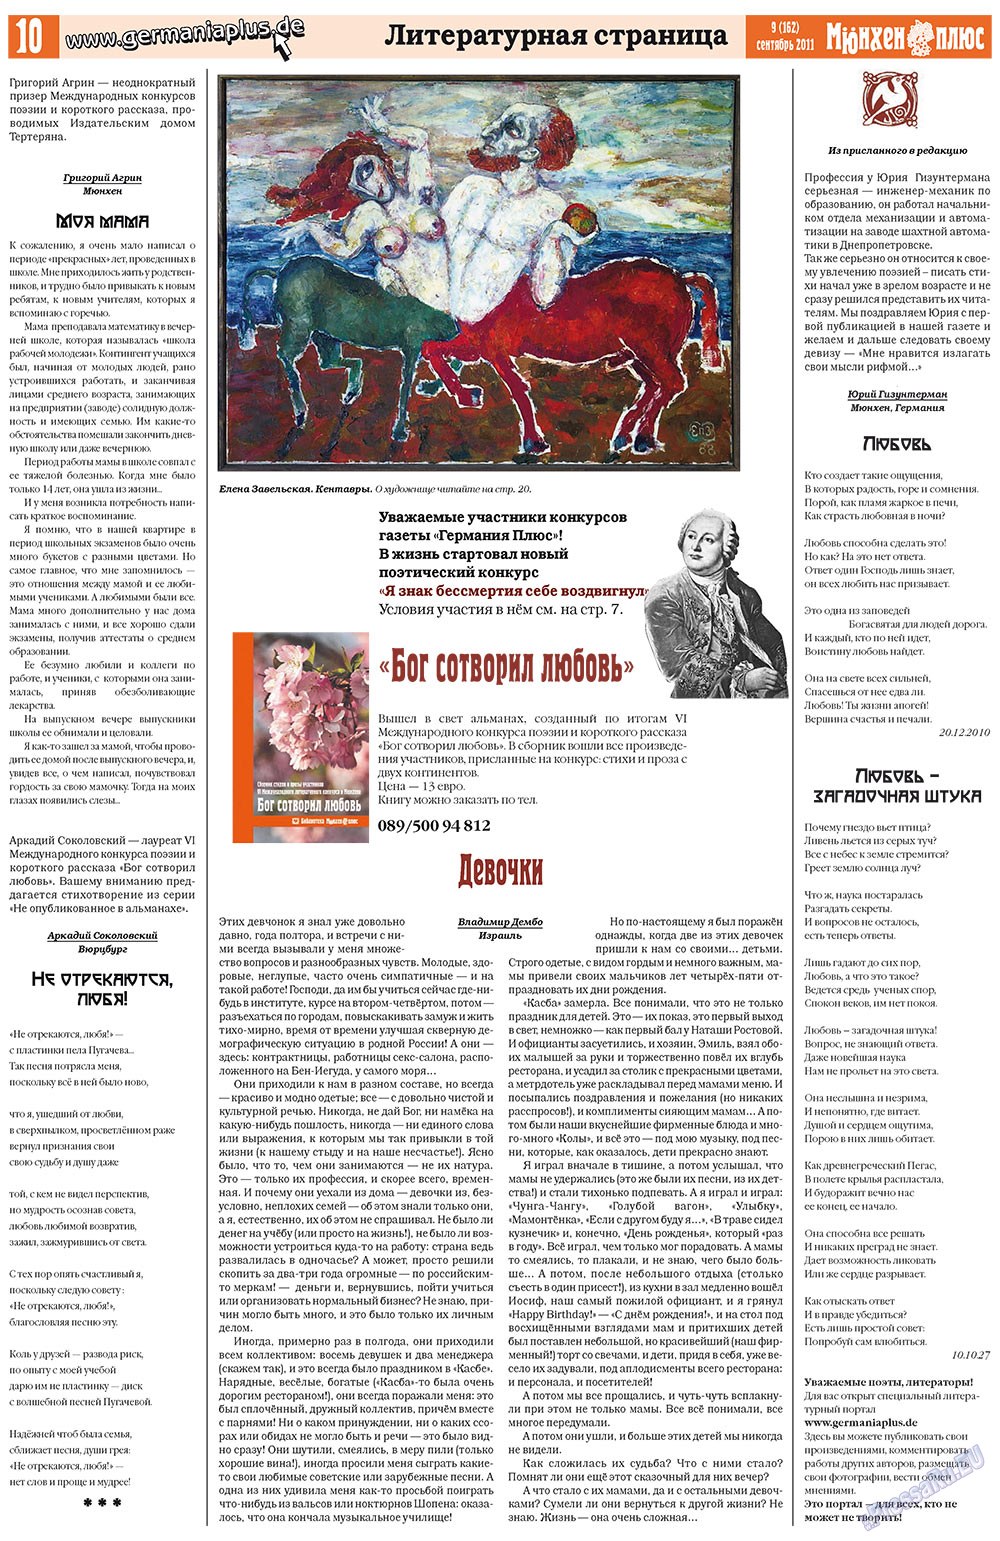 Германия плюс (газета). 2011 год, номер 9, стр. 10